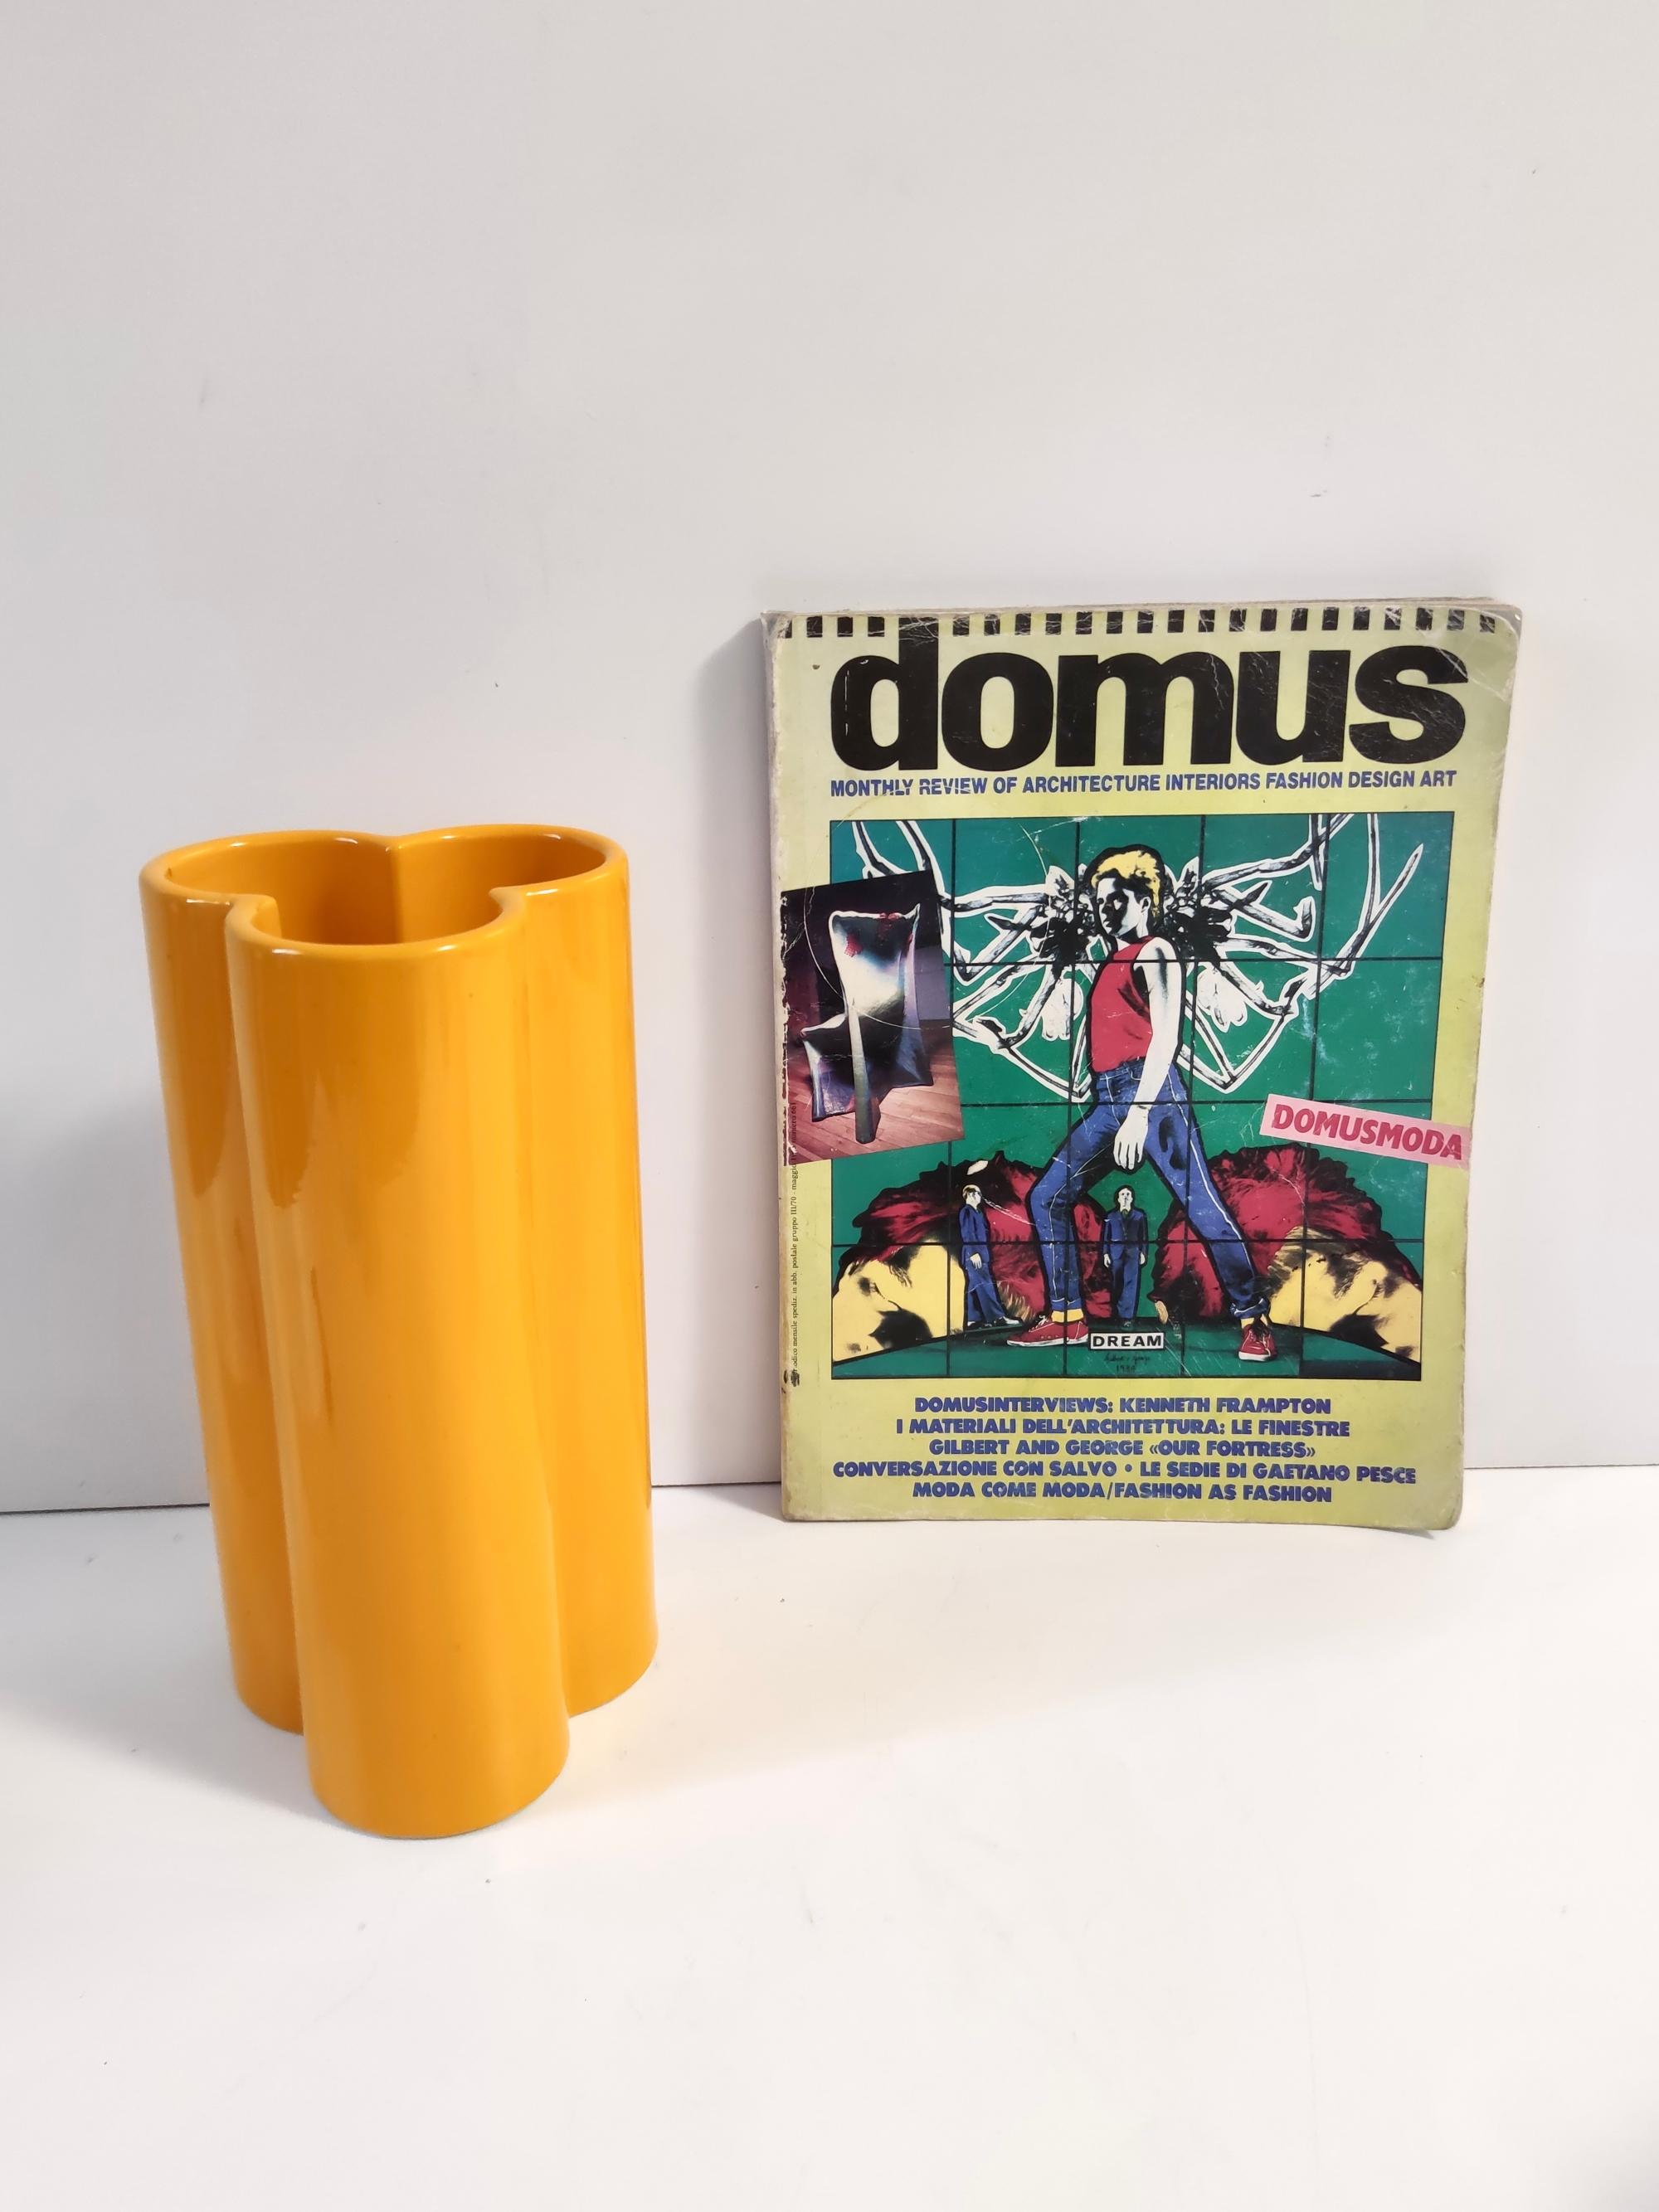 Hergestellt in Italien, 1970er Jahre.
Diese orange-gelbe Vase ist aus glasierter Keramik gefertigt.
Da es sich um ein Vintage-Set handelt, können sie leichte Gebrauchsspuren aufweisen, aber sie sind in einem ausgezeichneten Originalzustand und